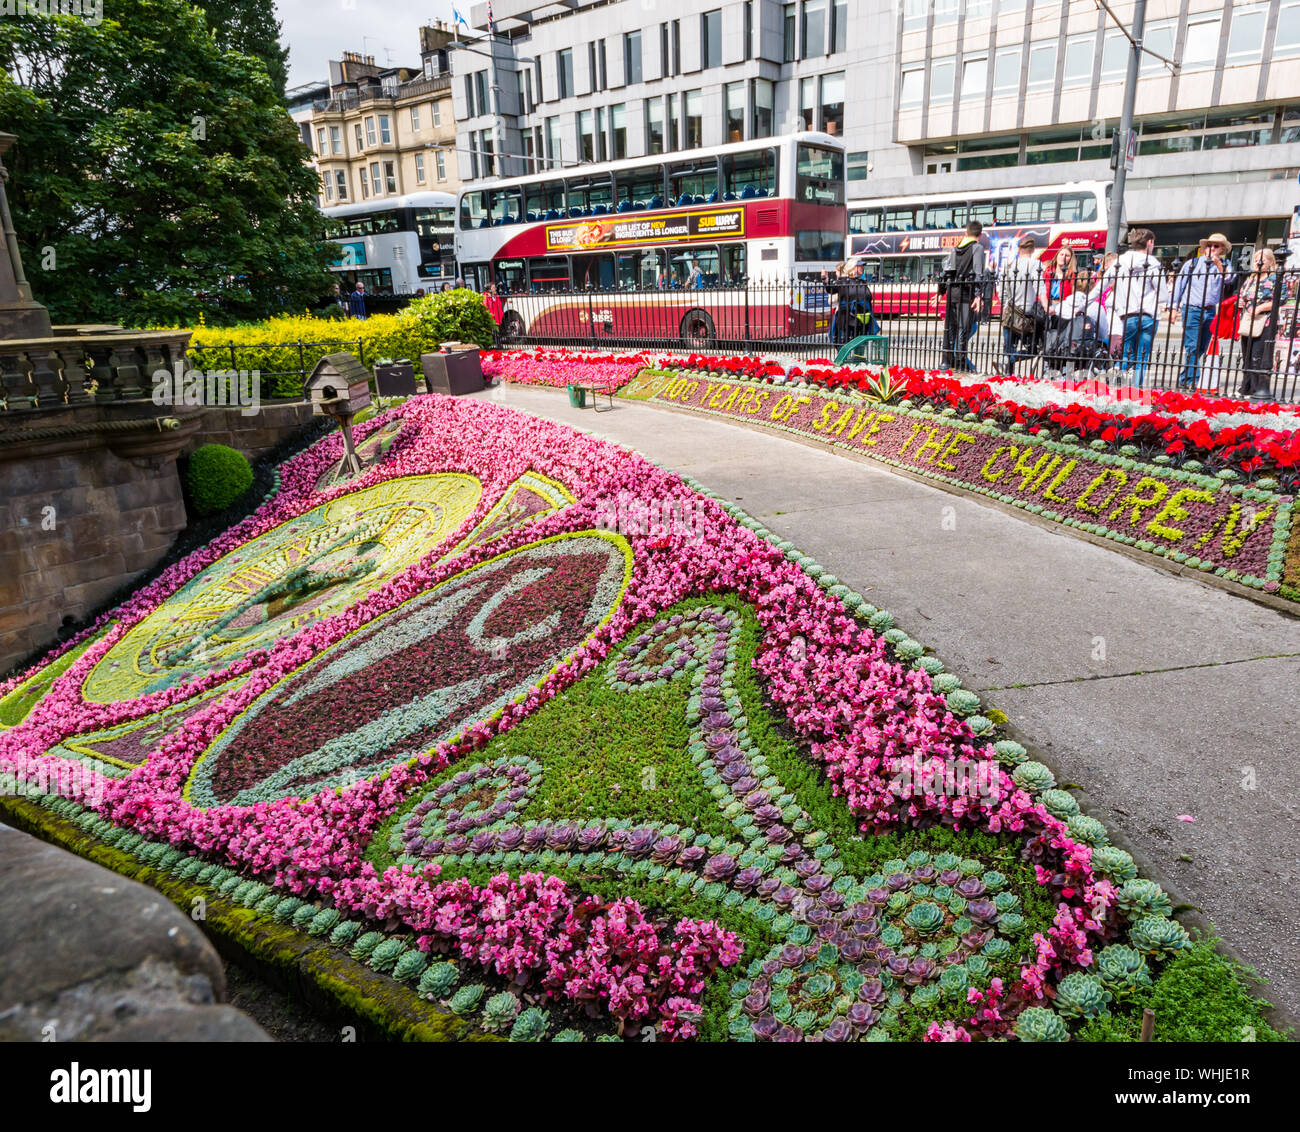 Die berühmten historischen älteste Floral Clock feiert Rettet die Kinder Centenary, Princes Street Gardens, Edinburgh, Schottland, Großbritannien 2019 Stockfoto